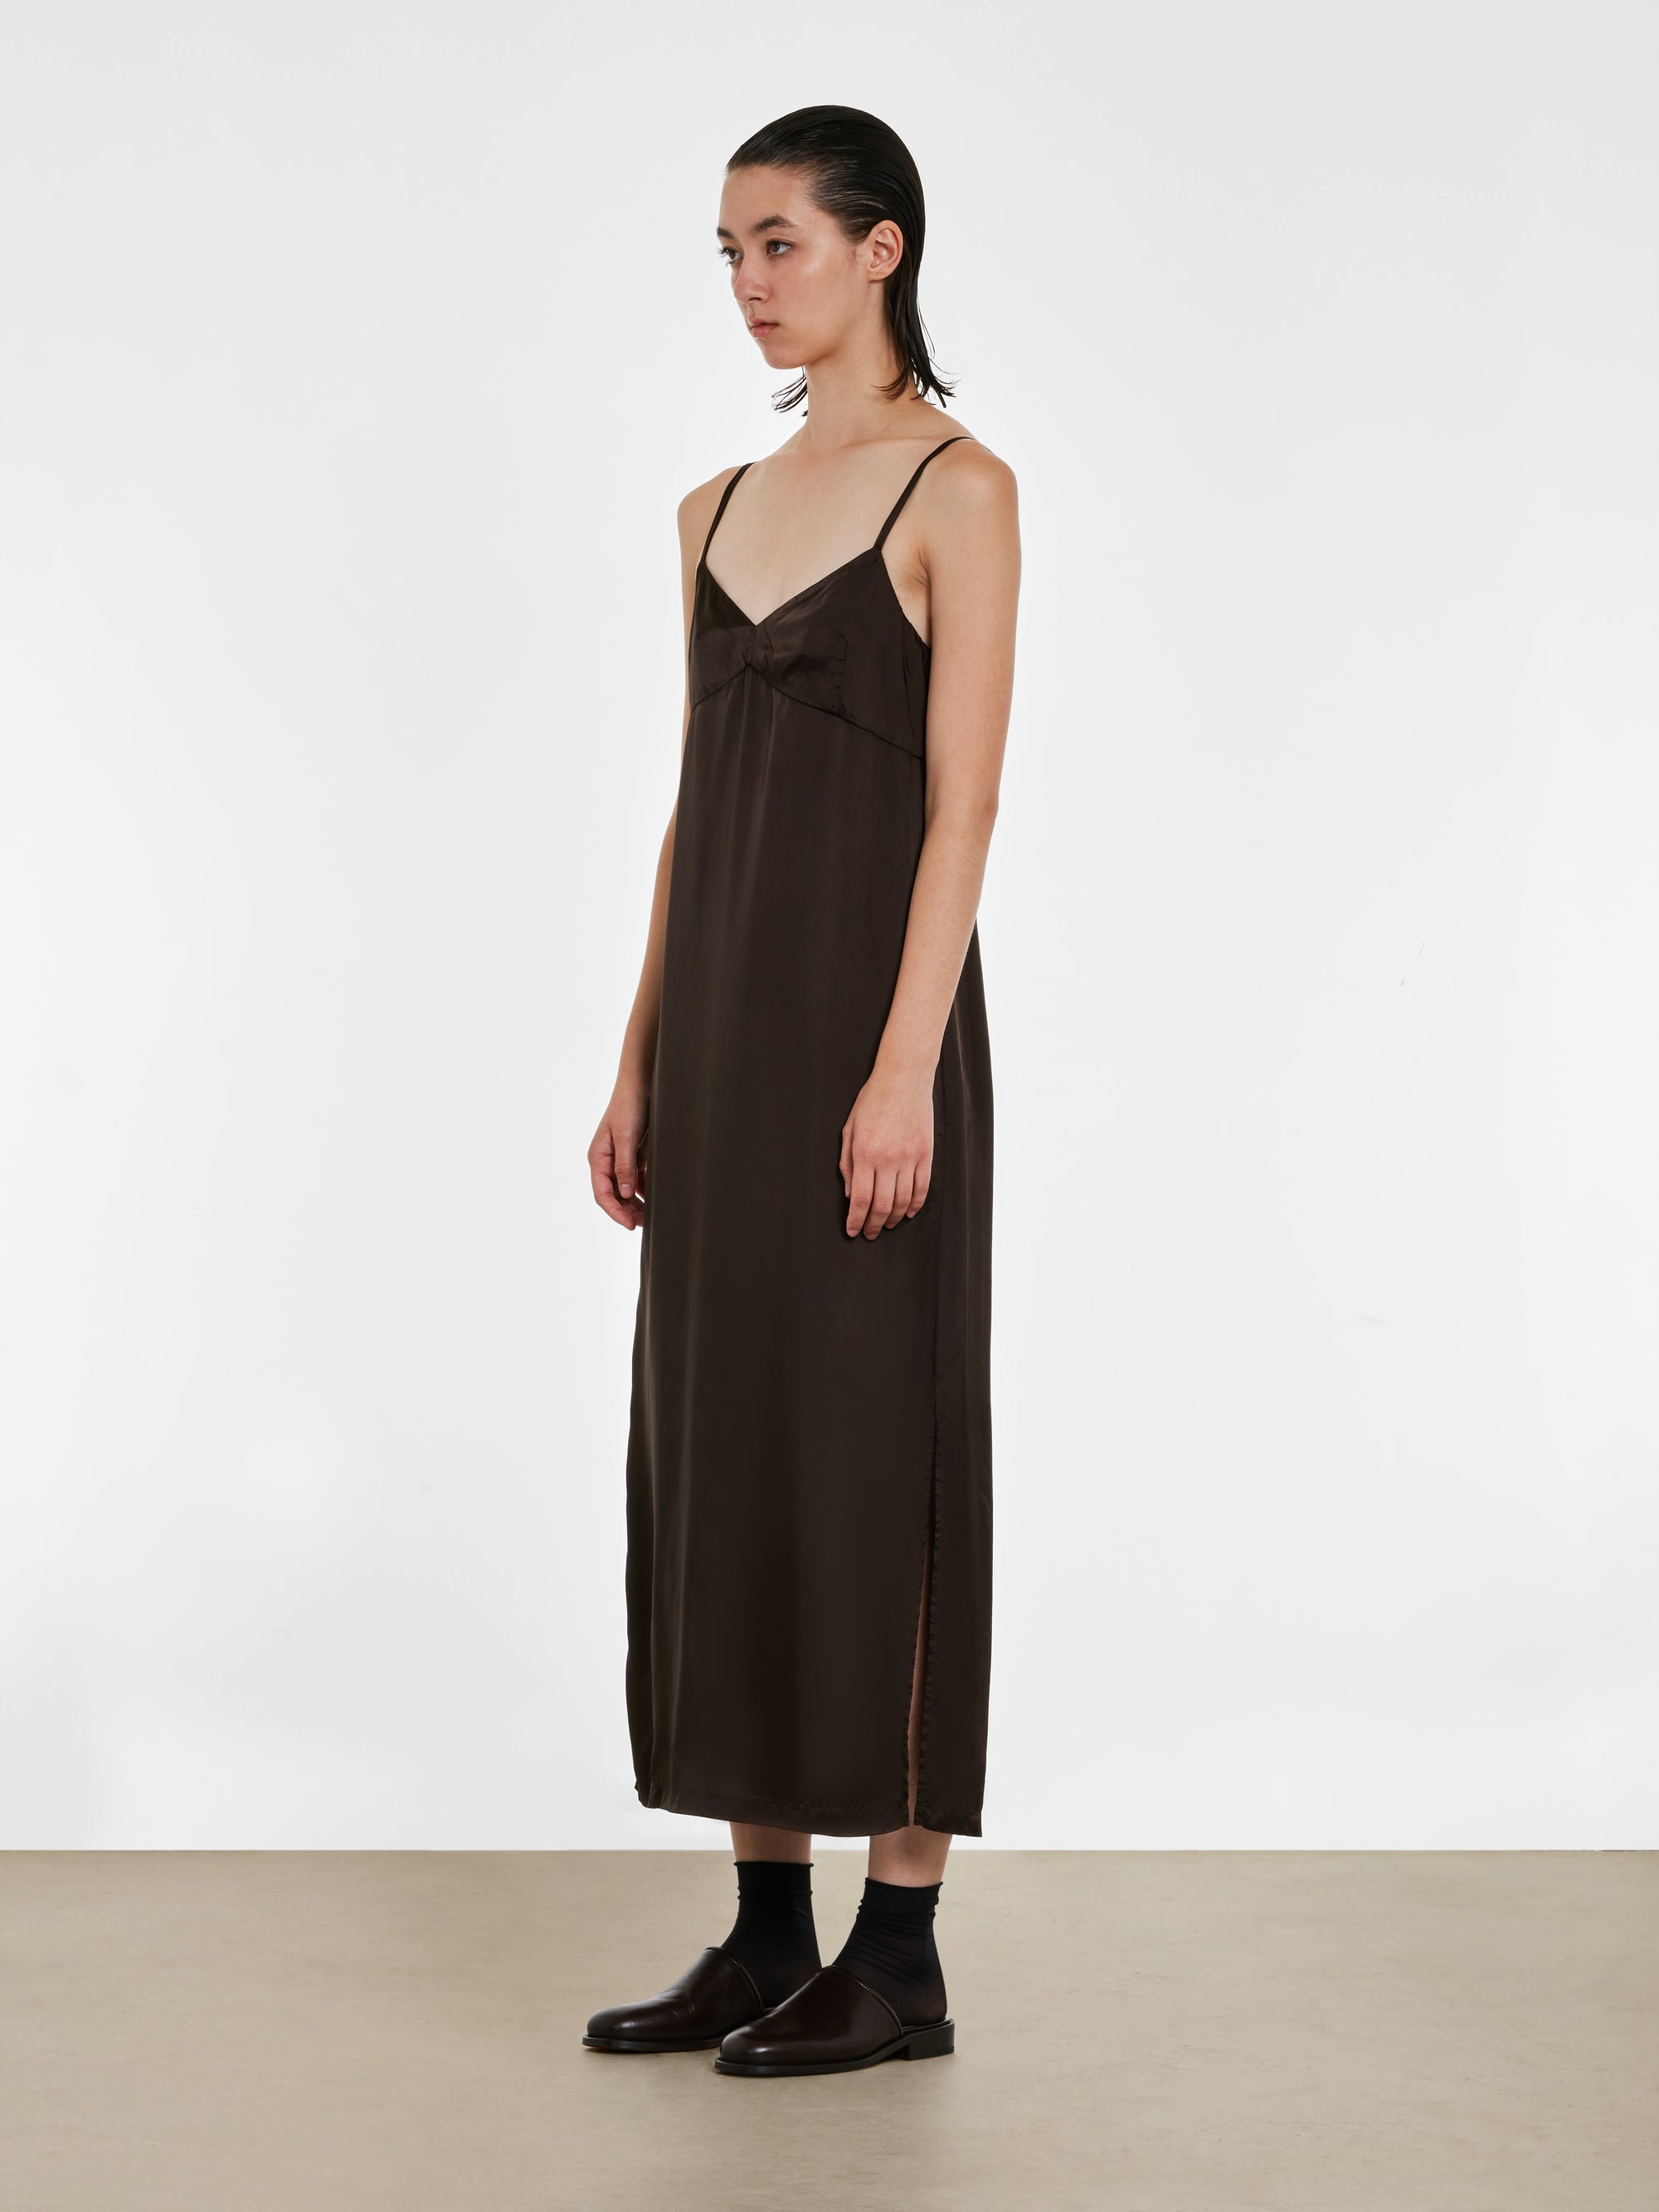 Dries Van Noten - Women’s Slip Dress - (Dark Brown) view 2